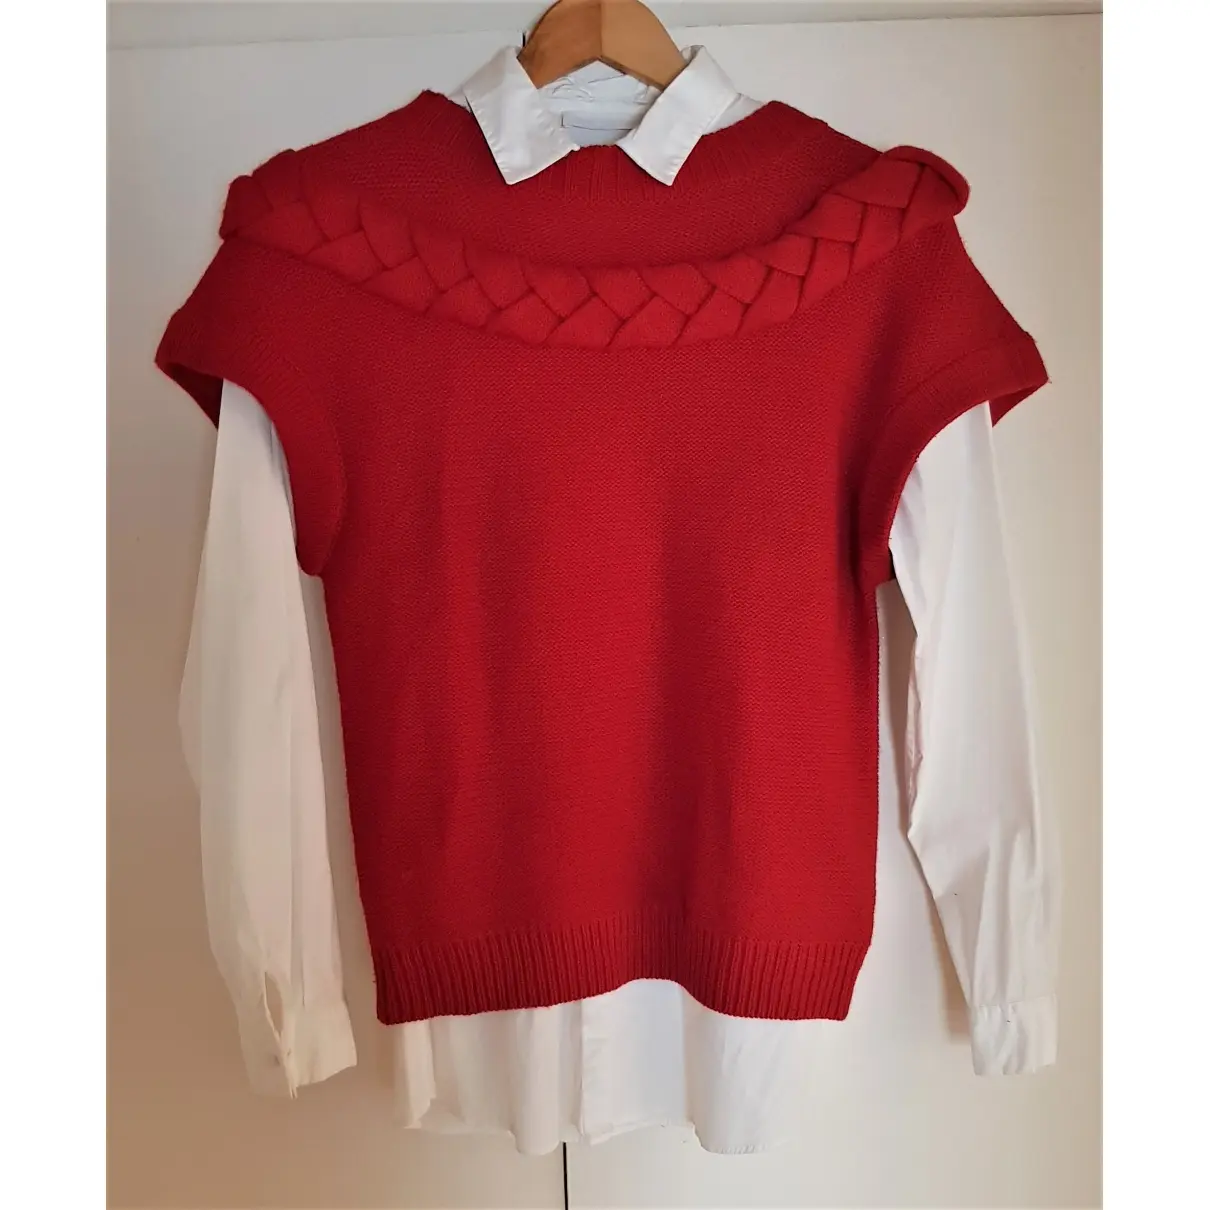 Buy Anne Fontaine Wool knitwear online